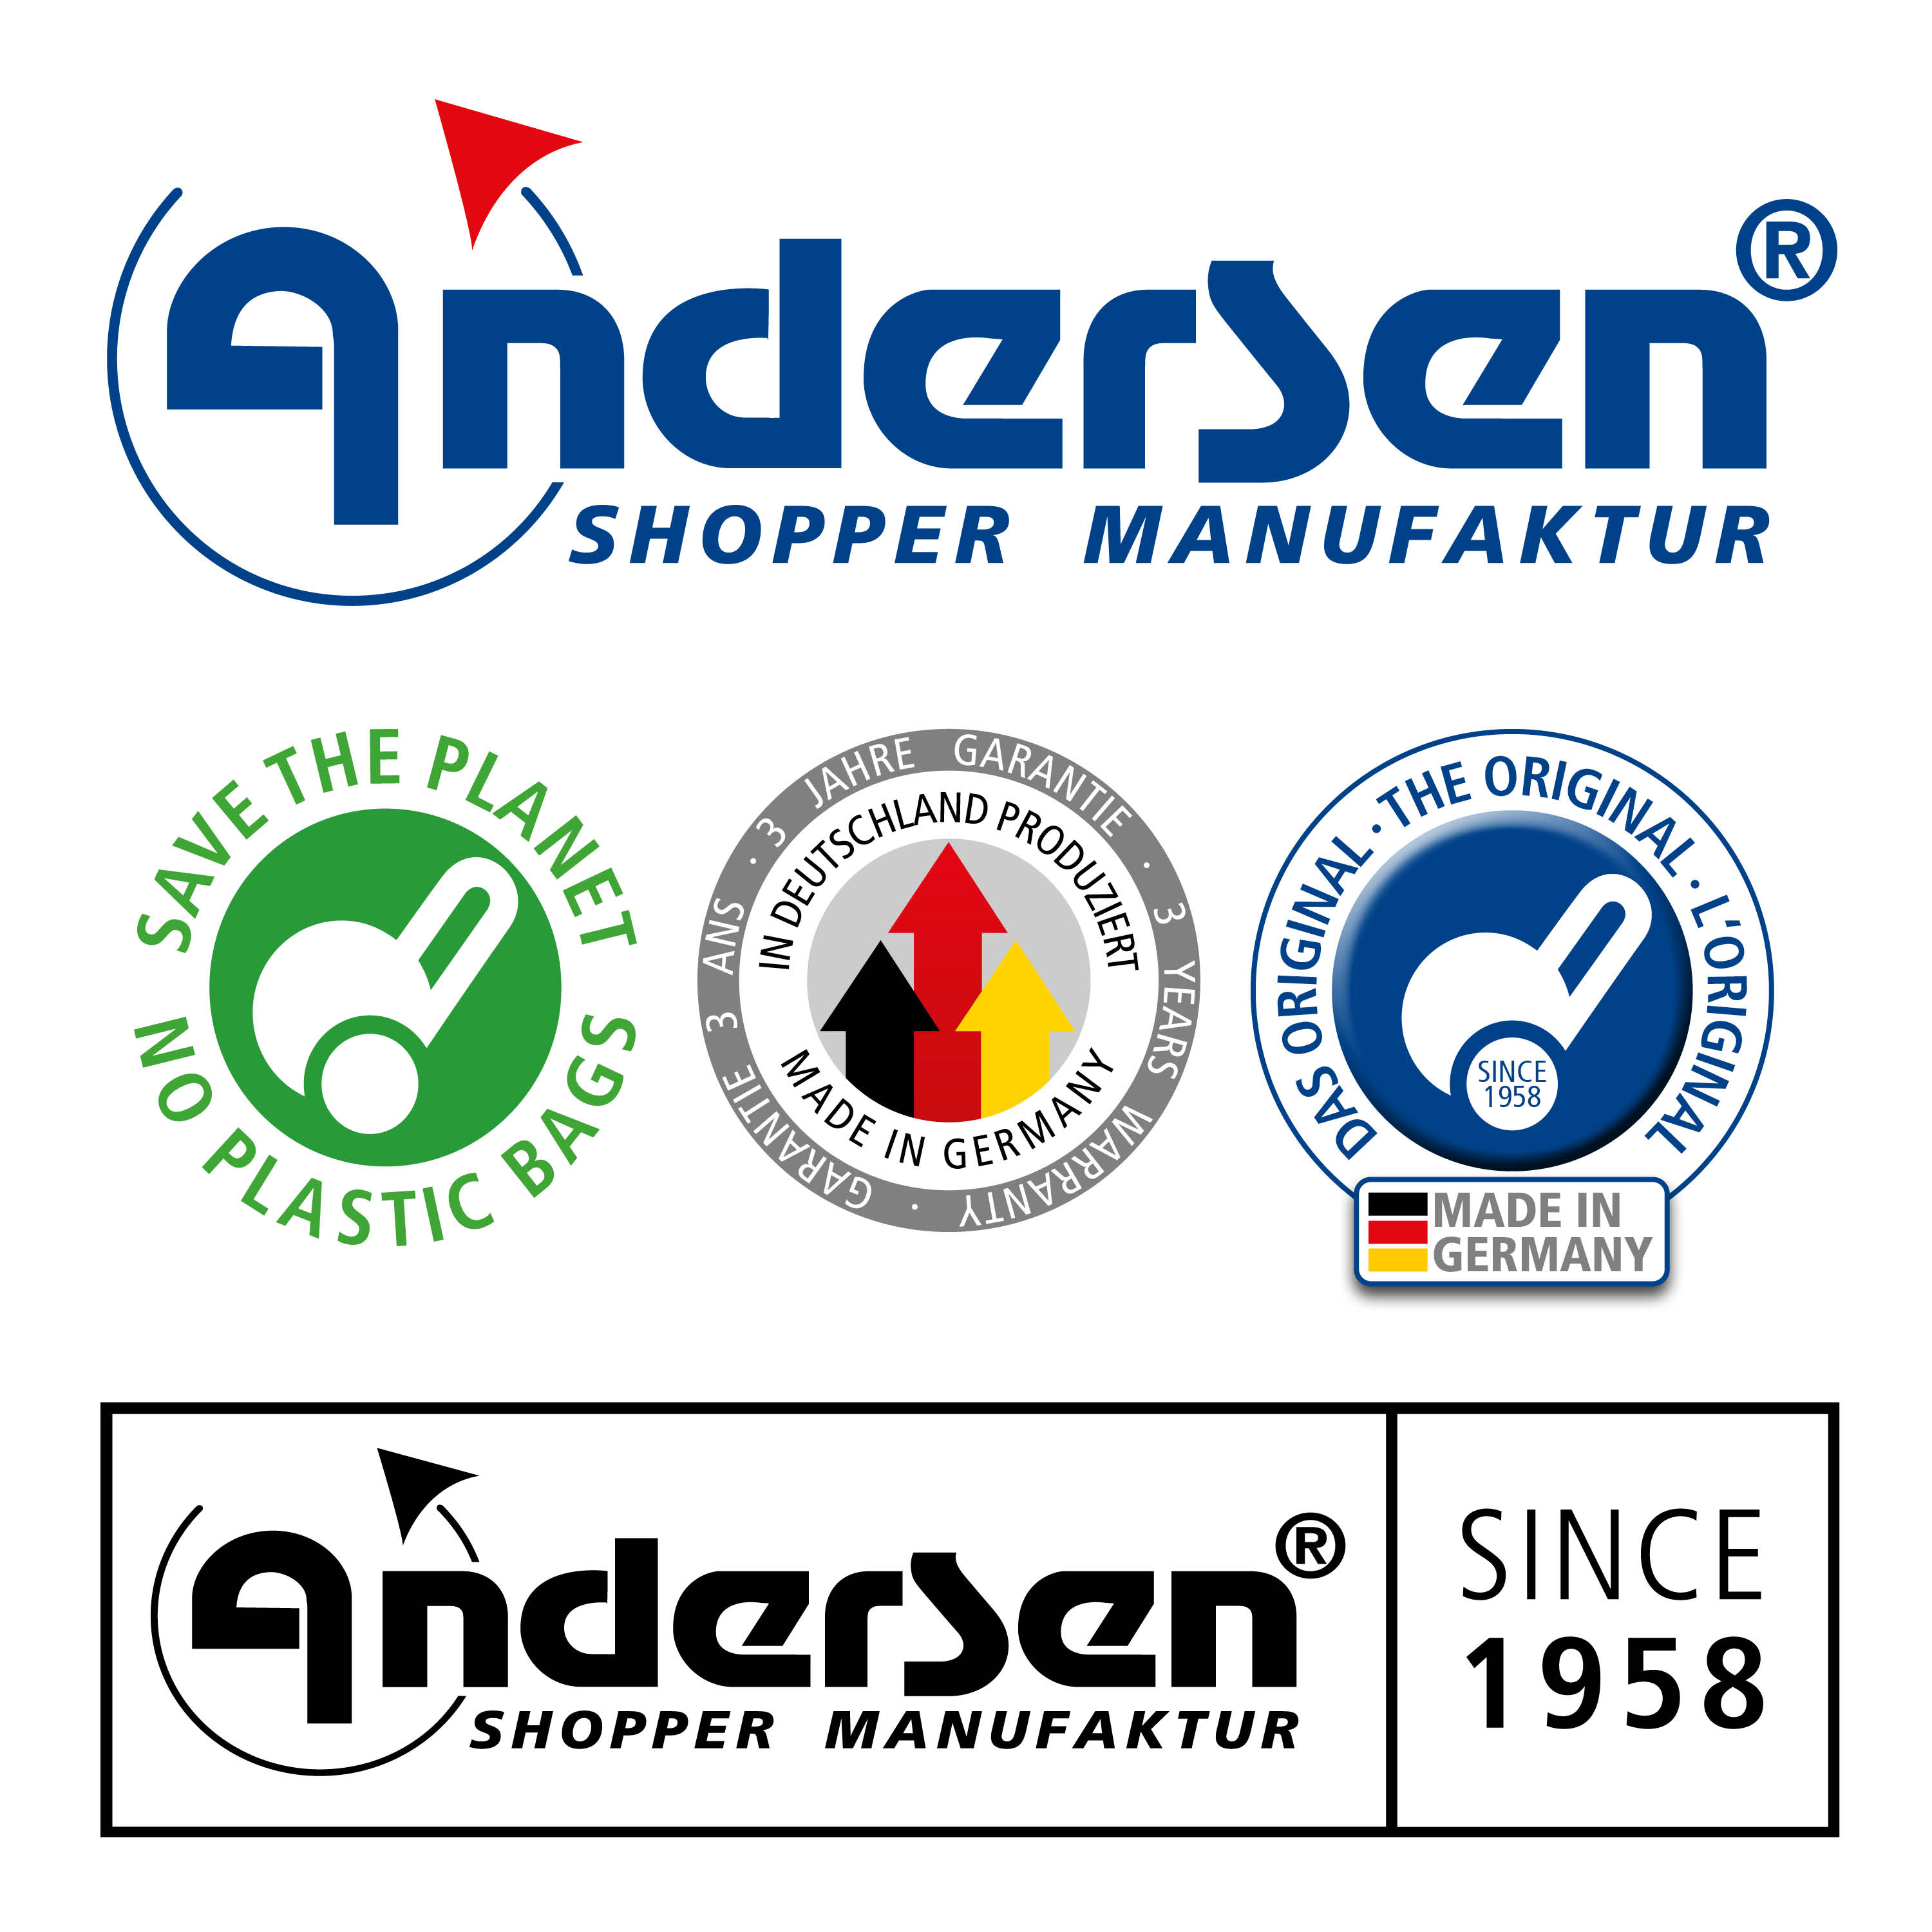 Andersen  Shopper Tasche Bahne in Gelb oder Grau